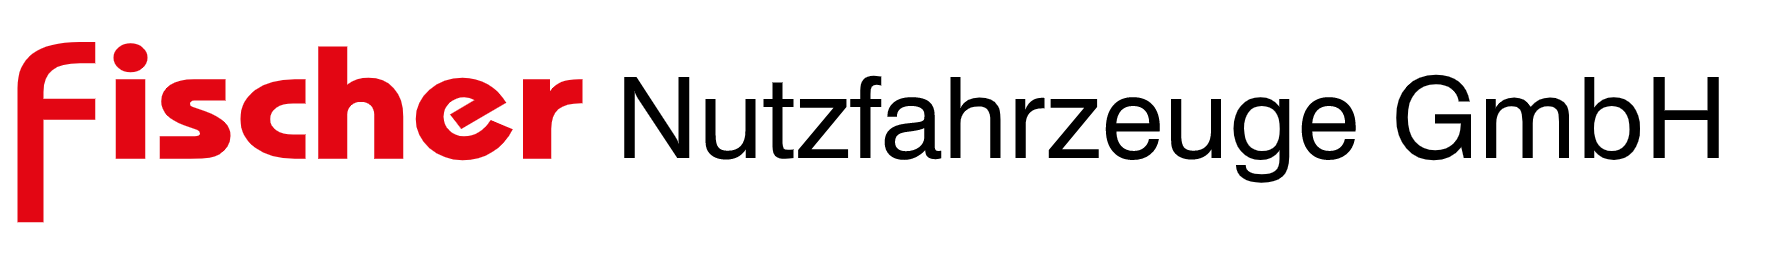 Fischer Nutzfahrzeuge GmbH